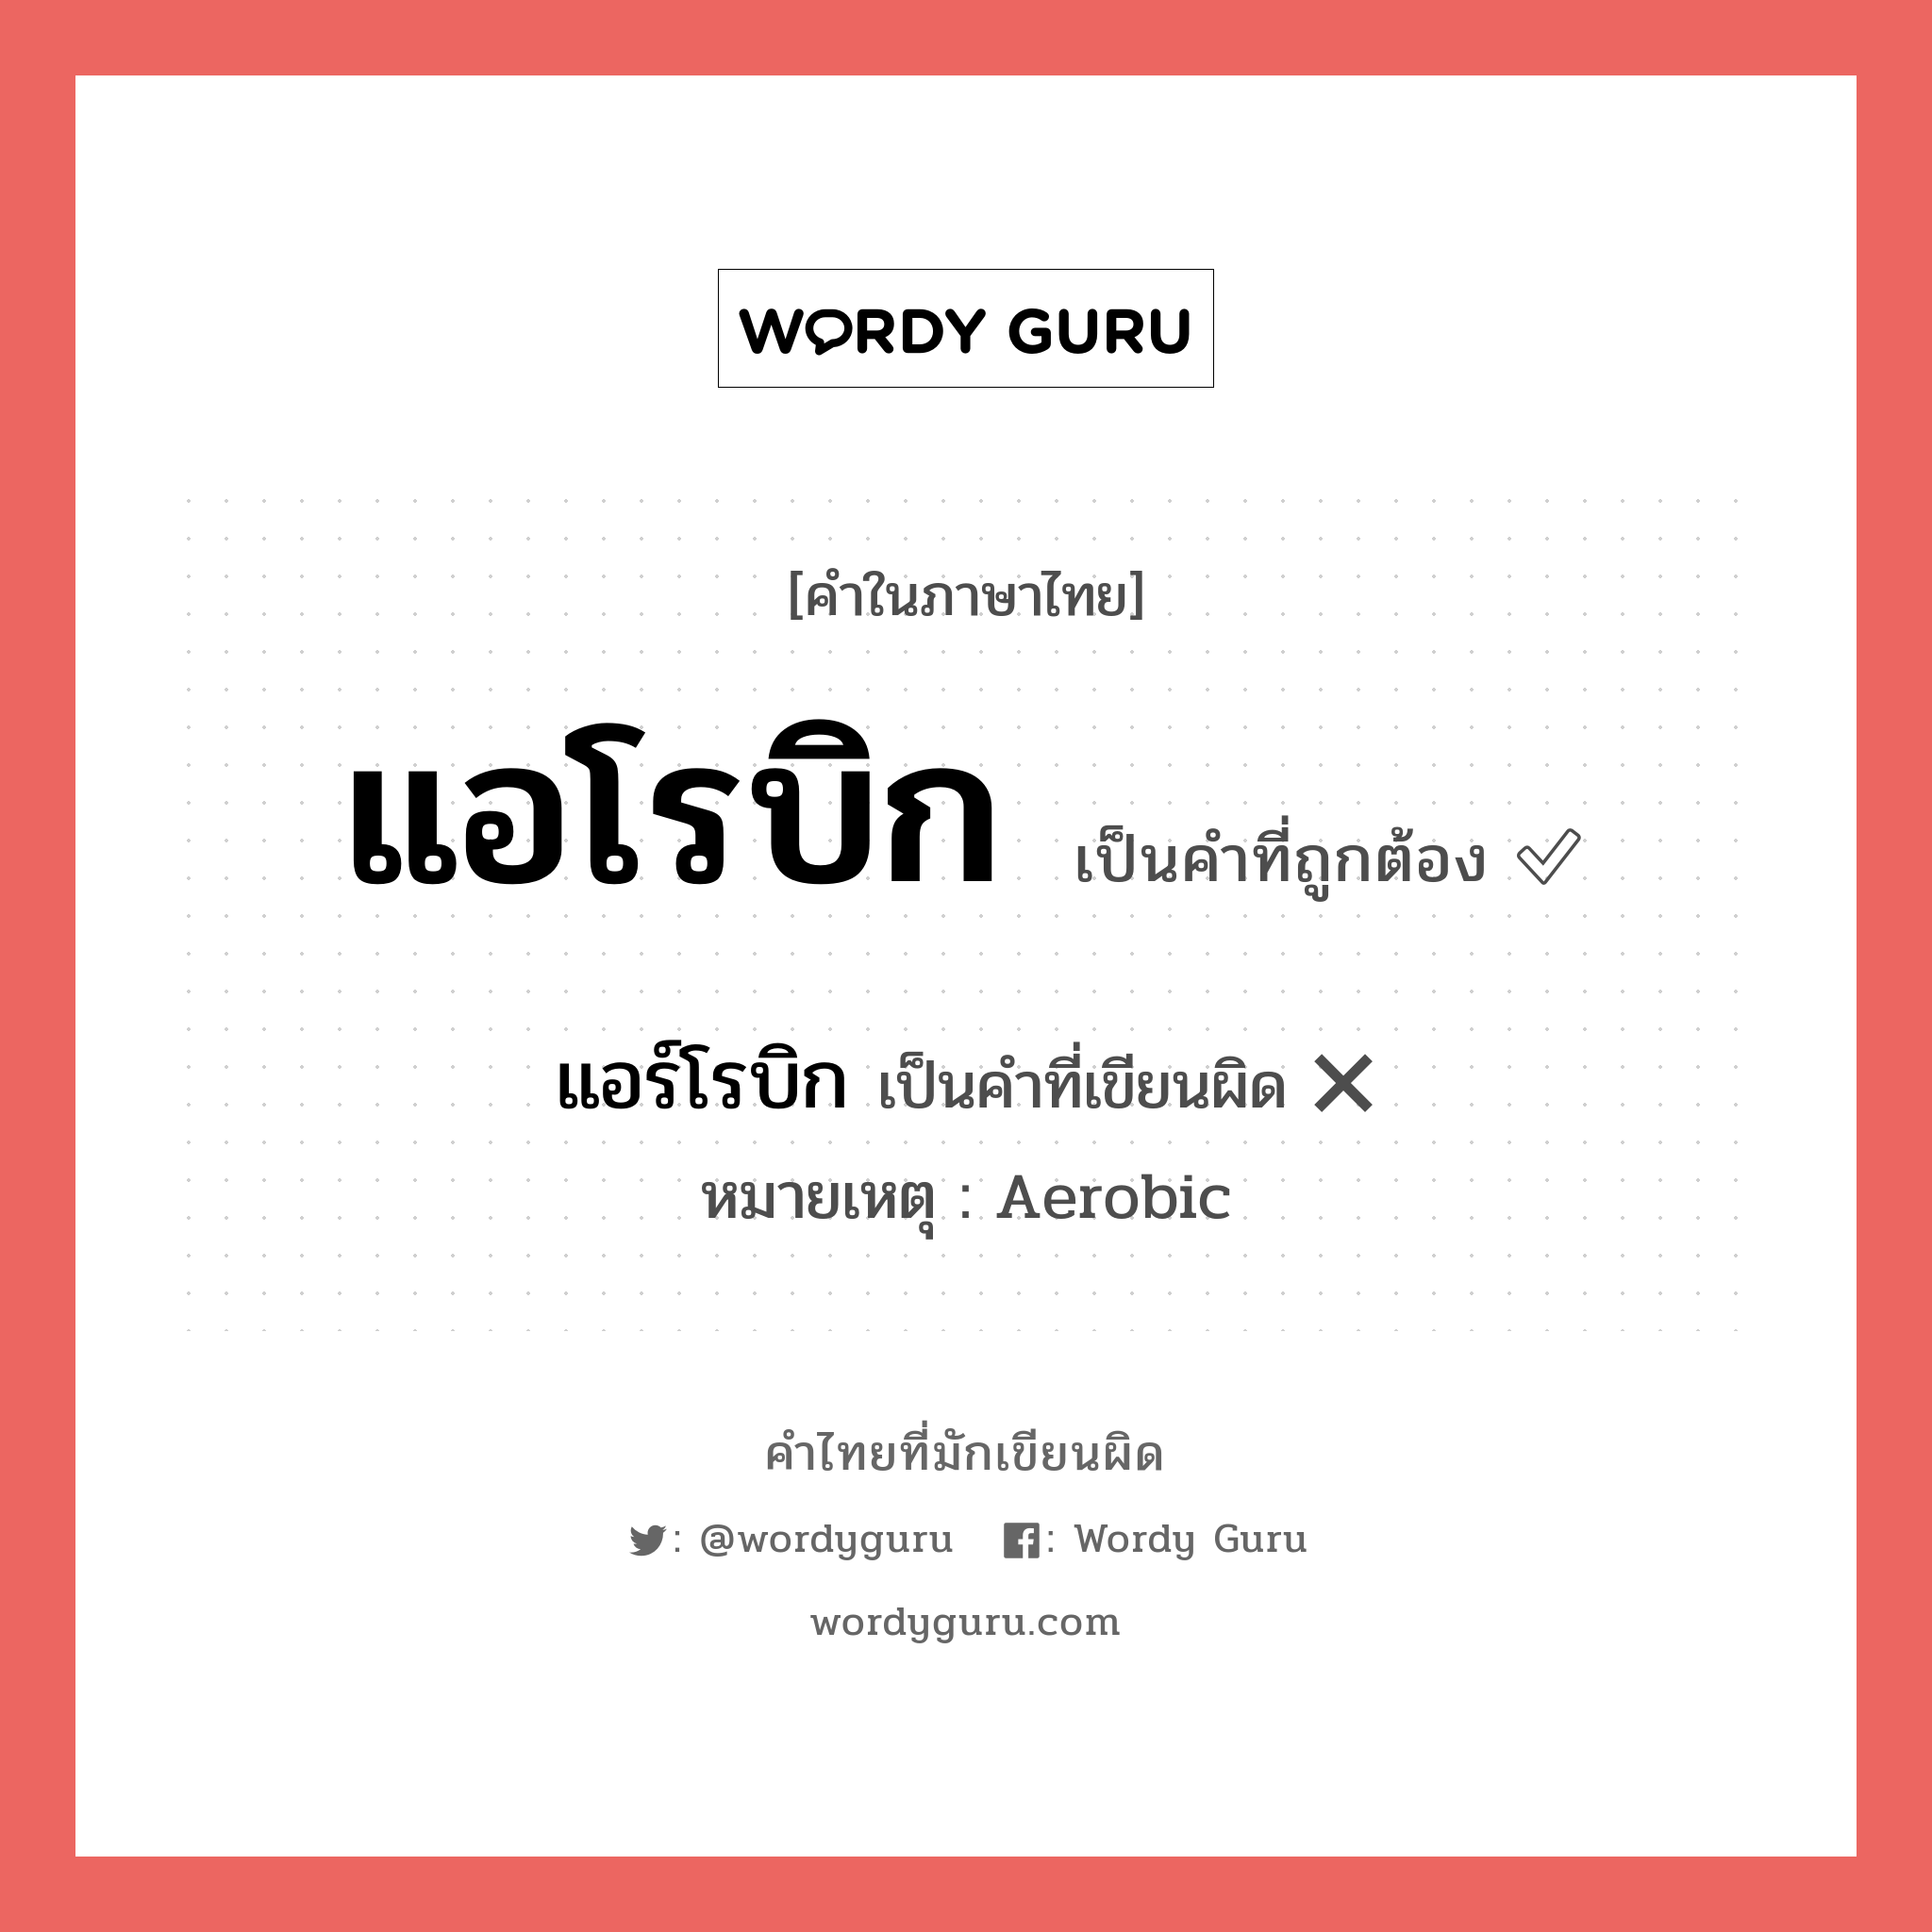 แอร์โรบิก หรือ แอโรบิก คำไหนเขียนถูก?, คำในภาษาไทยที่มักเขียนผิด แอร์โรบิก คำที่ผิด ❌ แอโรบิก หมายเหตุ Aerobic